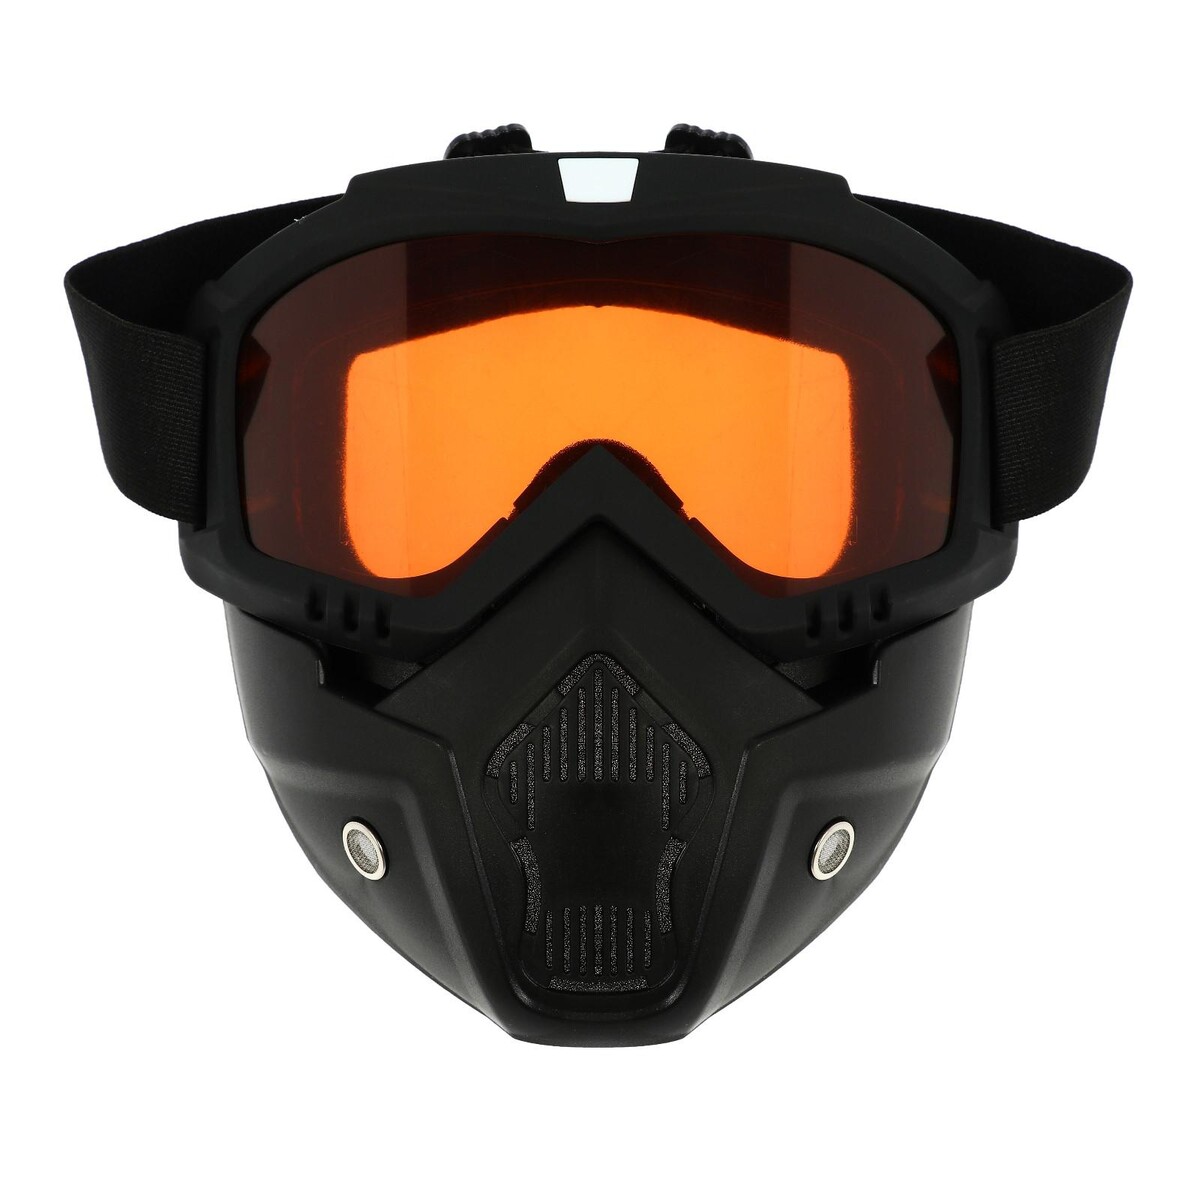 Очки-маска для езды на мототехнике, разборные, стекло оранжевый хром, цвет черный очки маска для езды на мототехнике разборные стекло оранжевый хром